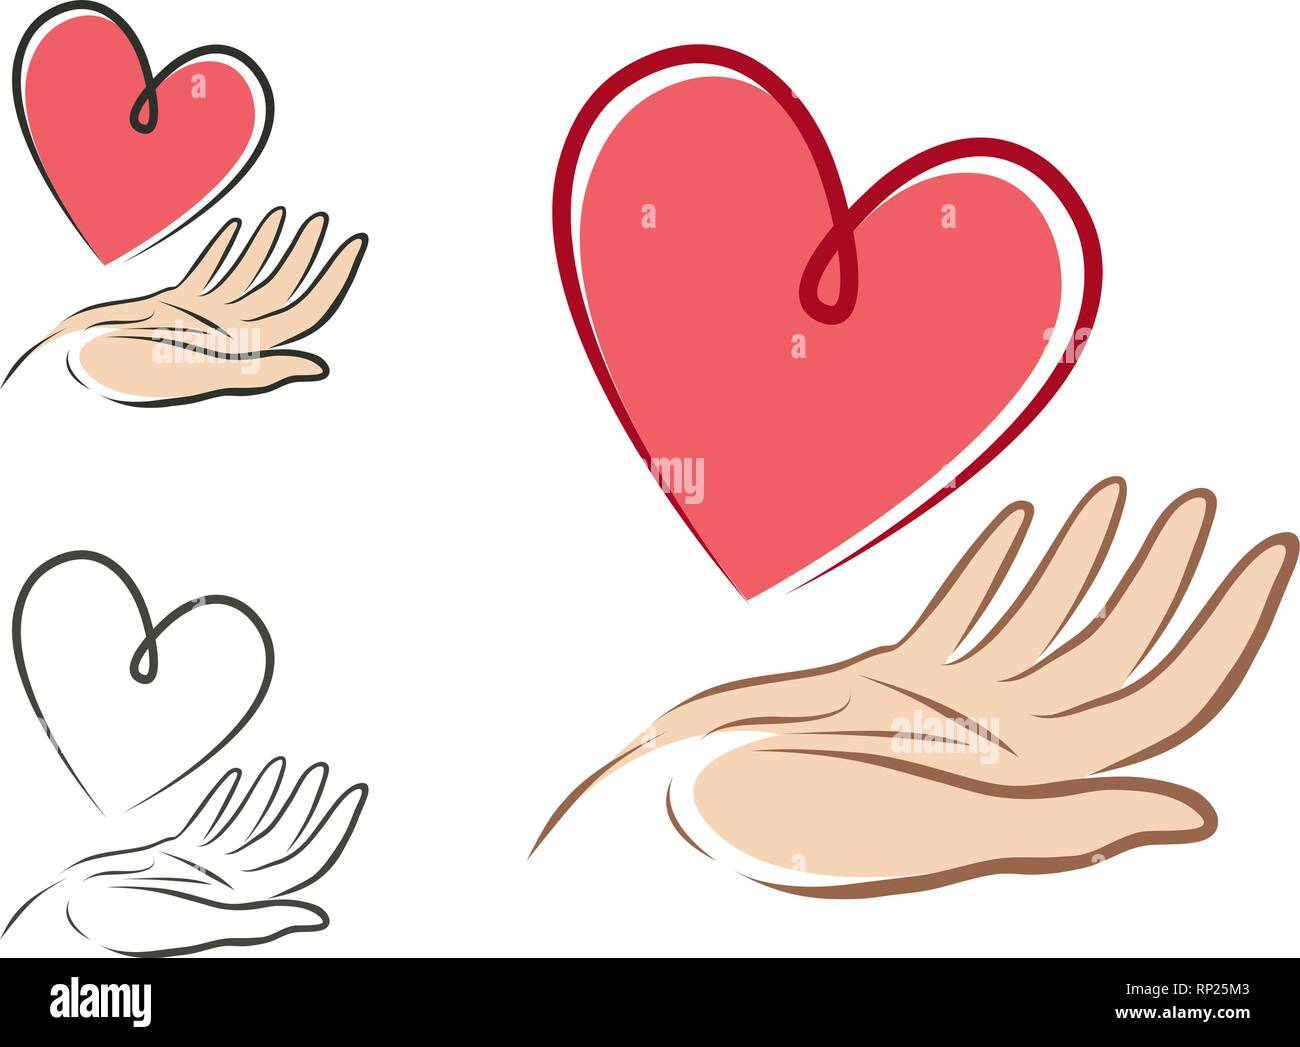 Herz in der Hand, Logo oder Label. Gesundheit, Liebe, das Leben, die Liebe. Vector Illustration Stock Vektor